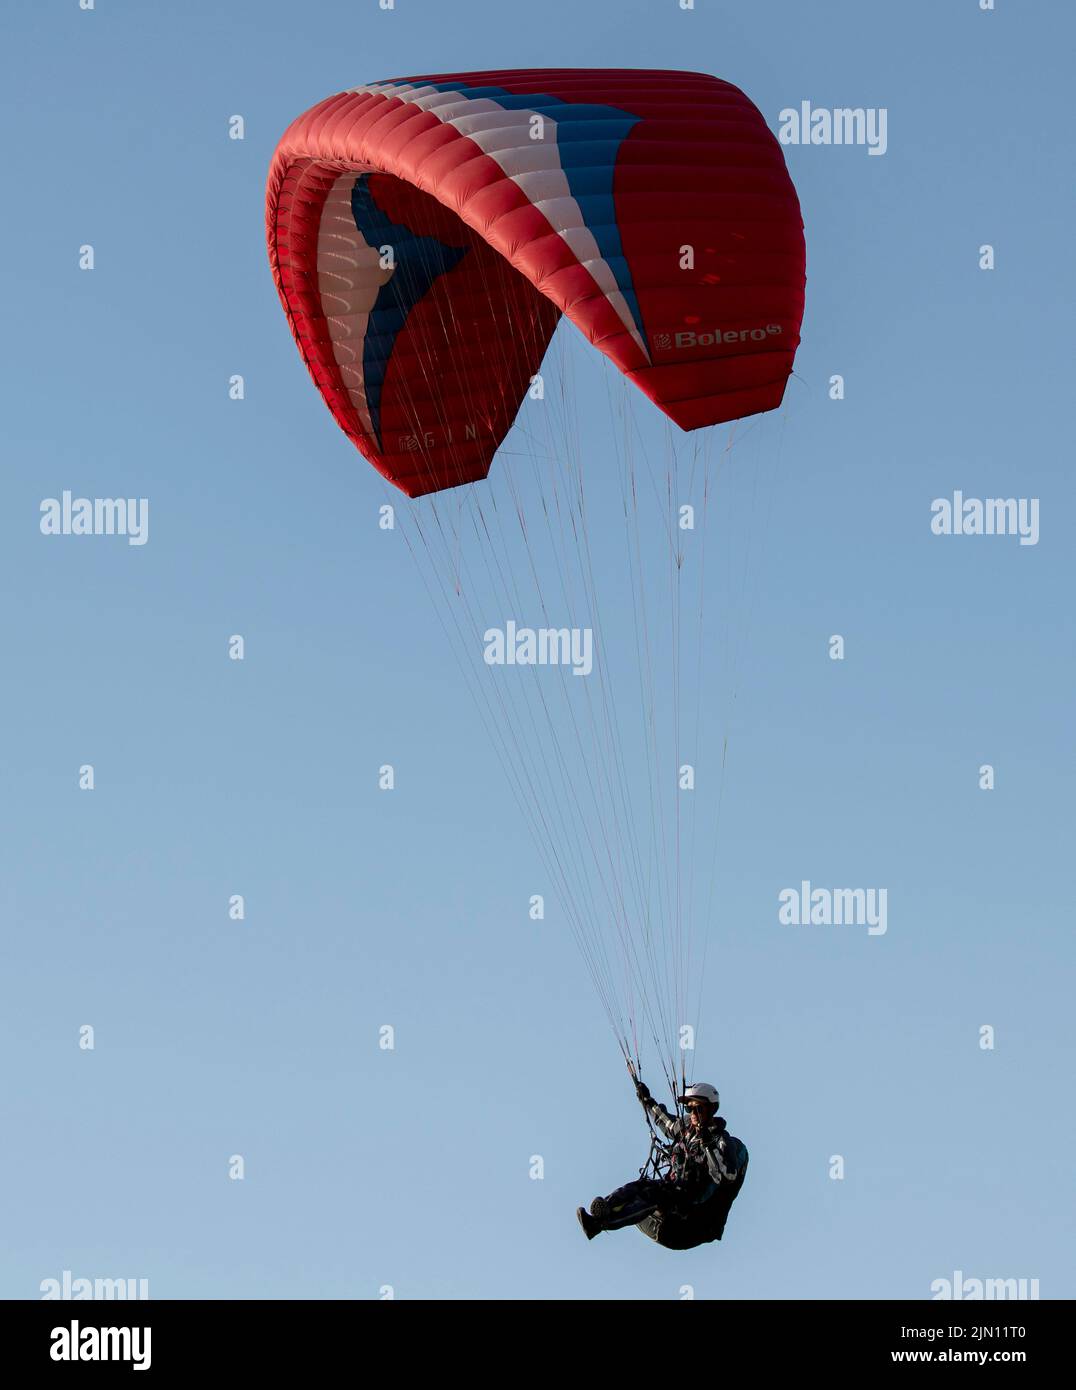 (220808) -- XINJIANG, 8. August 2022 (Xinhua) -- Chen Ruifeng gleitet am Himmel über dem südlichen Vorort Urumqi, der nordwestlichen Autonomen Region Xinjiang Uygur, am 29. Mai 2022. Der 52-jährige Chen Ruifeng, der in Xinjiang geboren wurde, ist ein Paragliding-Amateur. Er sagt, dass er sich wie mit seinen eigenen Flügeln fühlt, wenn der Gleitschirm geöffnet wird. Im Jahr 2016 begann Chen Ruifeng, Gleitschirmfliegen zu üben. Später trat er einem lokalen Verein bei und erhielt nach dem Training seine Flugbescheinigung. Als Outdoor-Enthusiast engagiert er sich auch für Trailrunning, Bergsteigen und Eisklettern. Seiner Meinung nach das einzigartige Gelände von Xinji Stockfoto